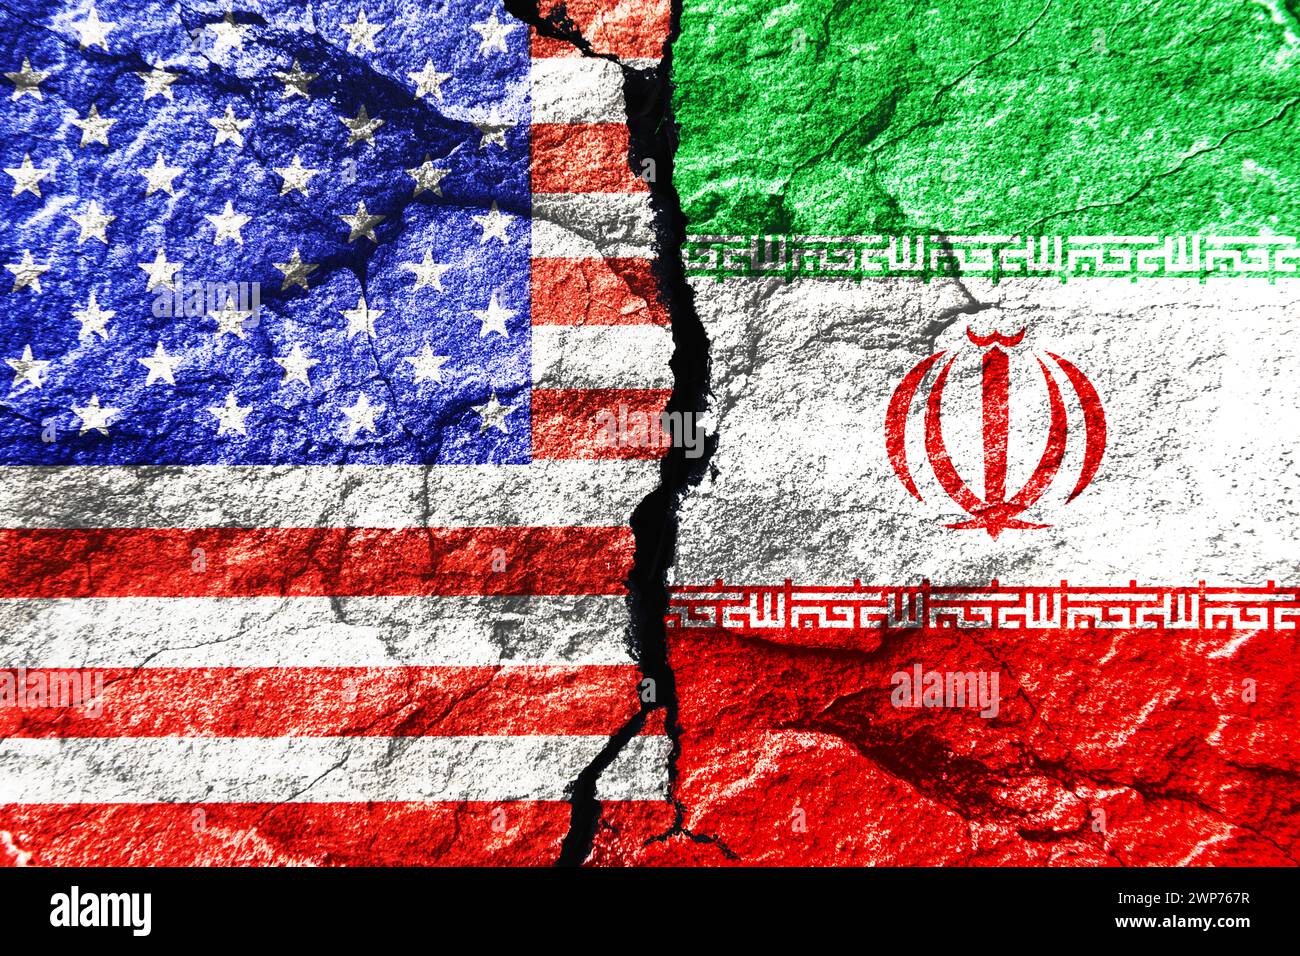 FOTOMONTAGE, Fahnen von den Vereinigten Staaten und Iran auf gebrochenem Grund Banque D'Images